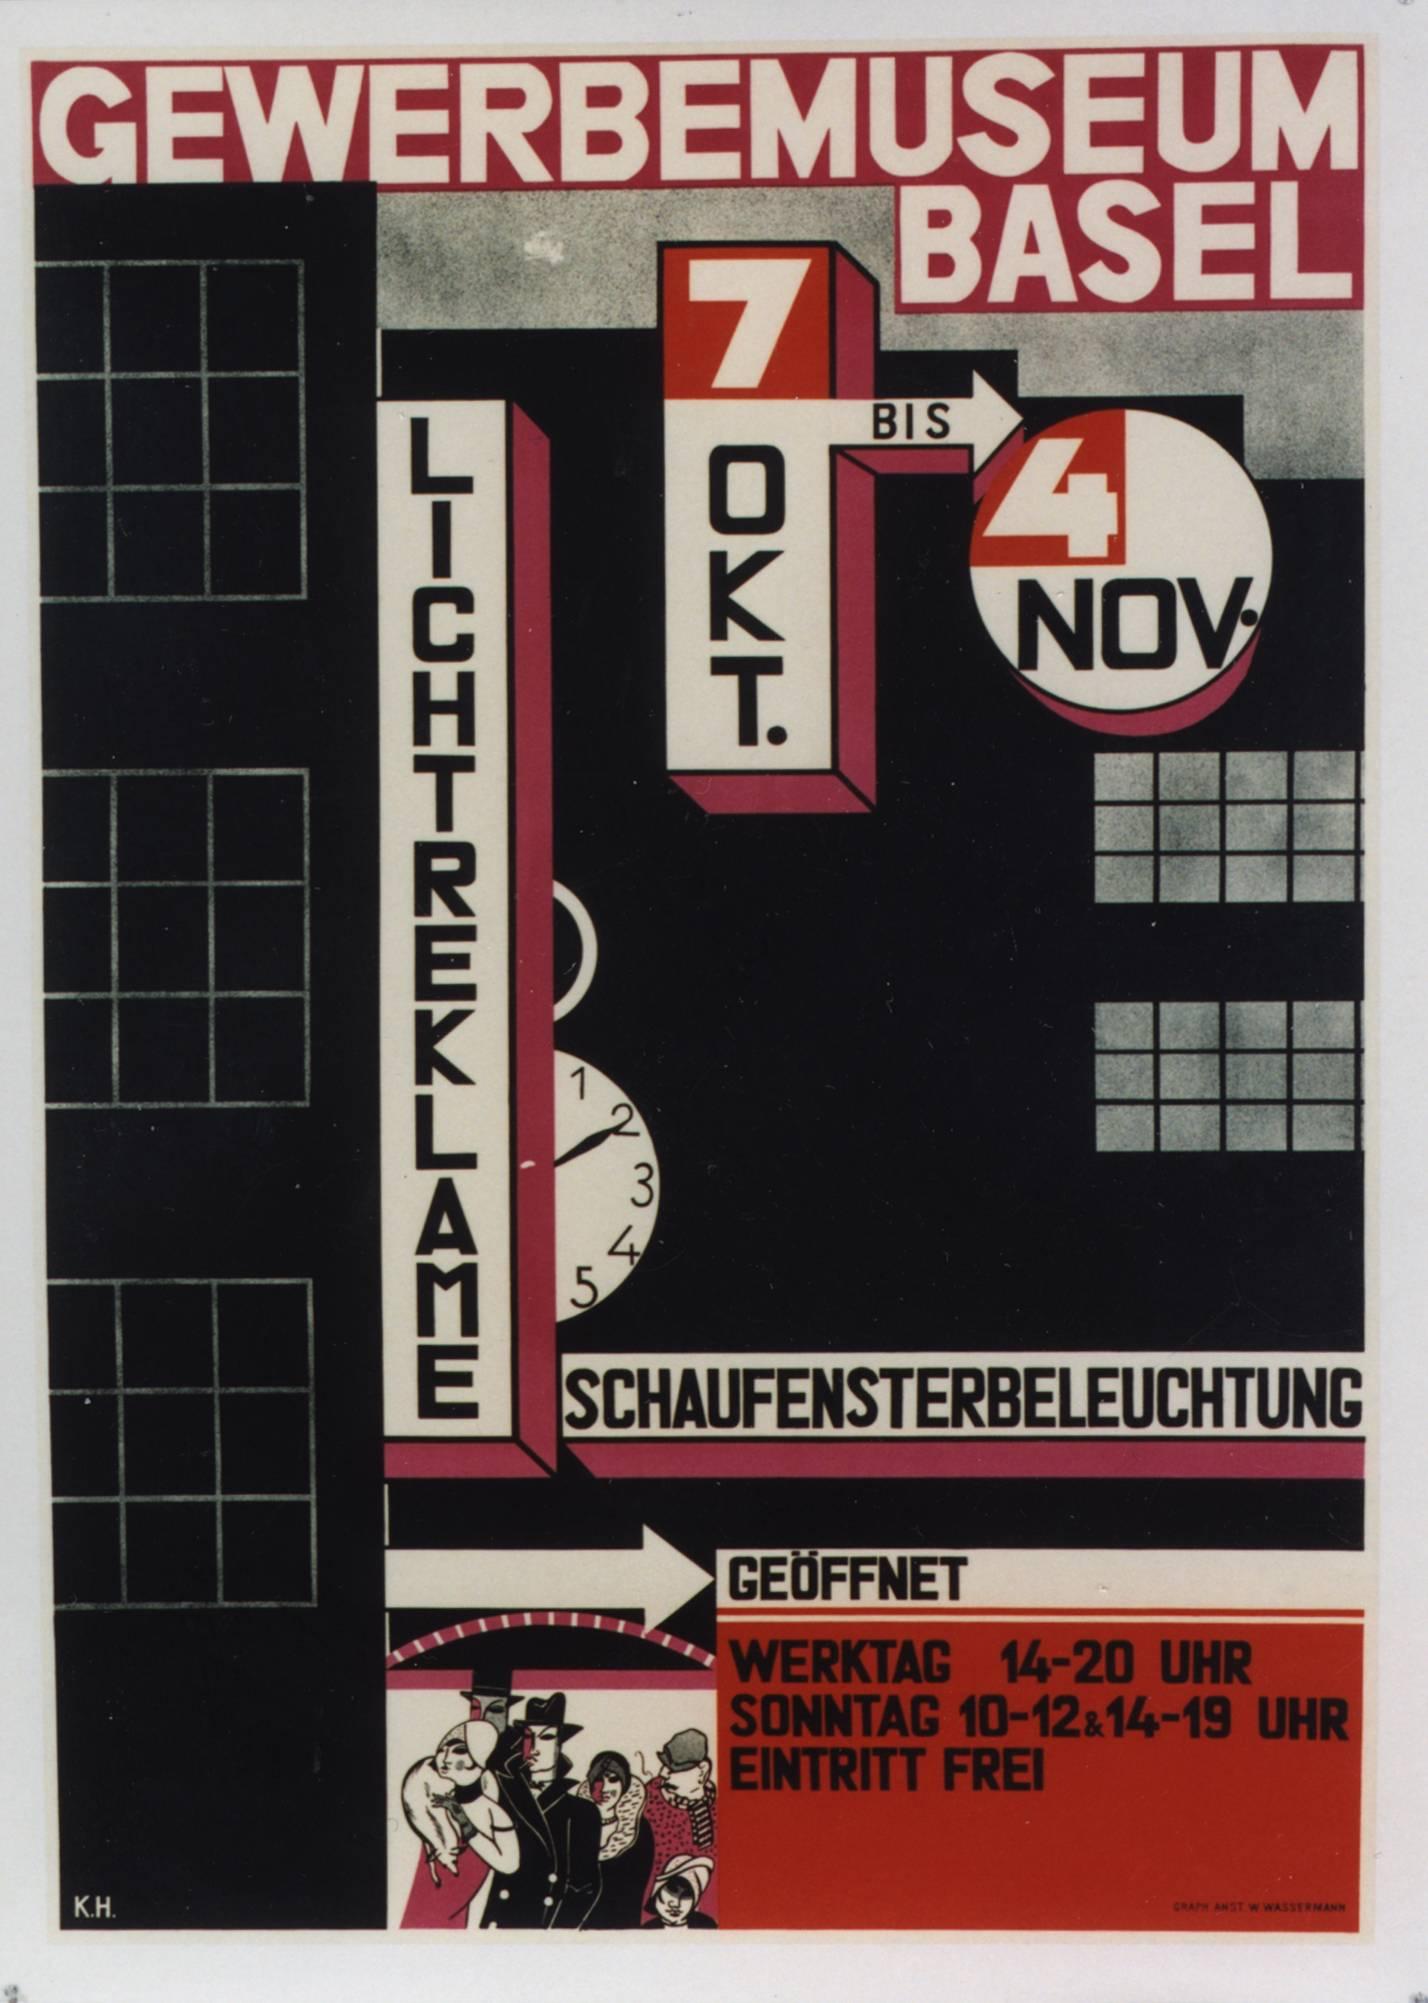 Charles [Karl] Hidenlang Abstract Print - Gewerbemuseum, Basel/Licht Reklame. 1928. 